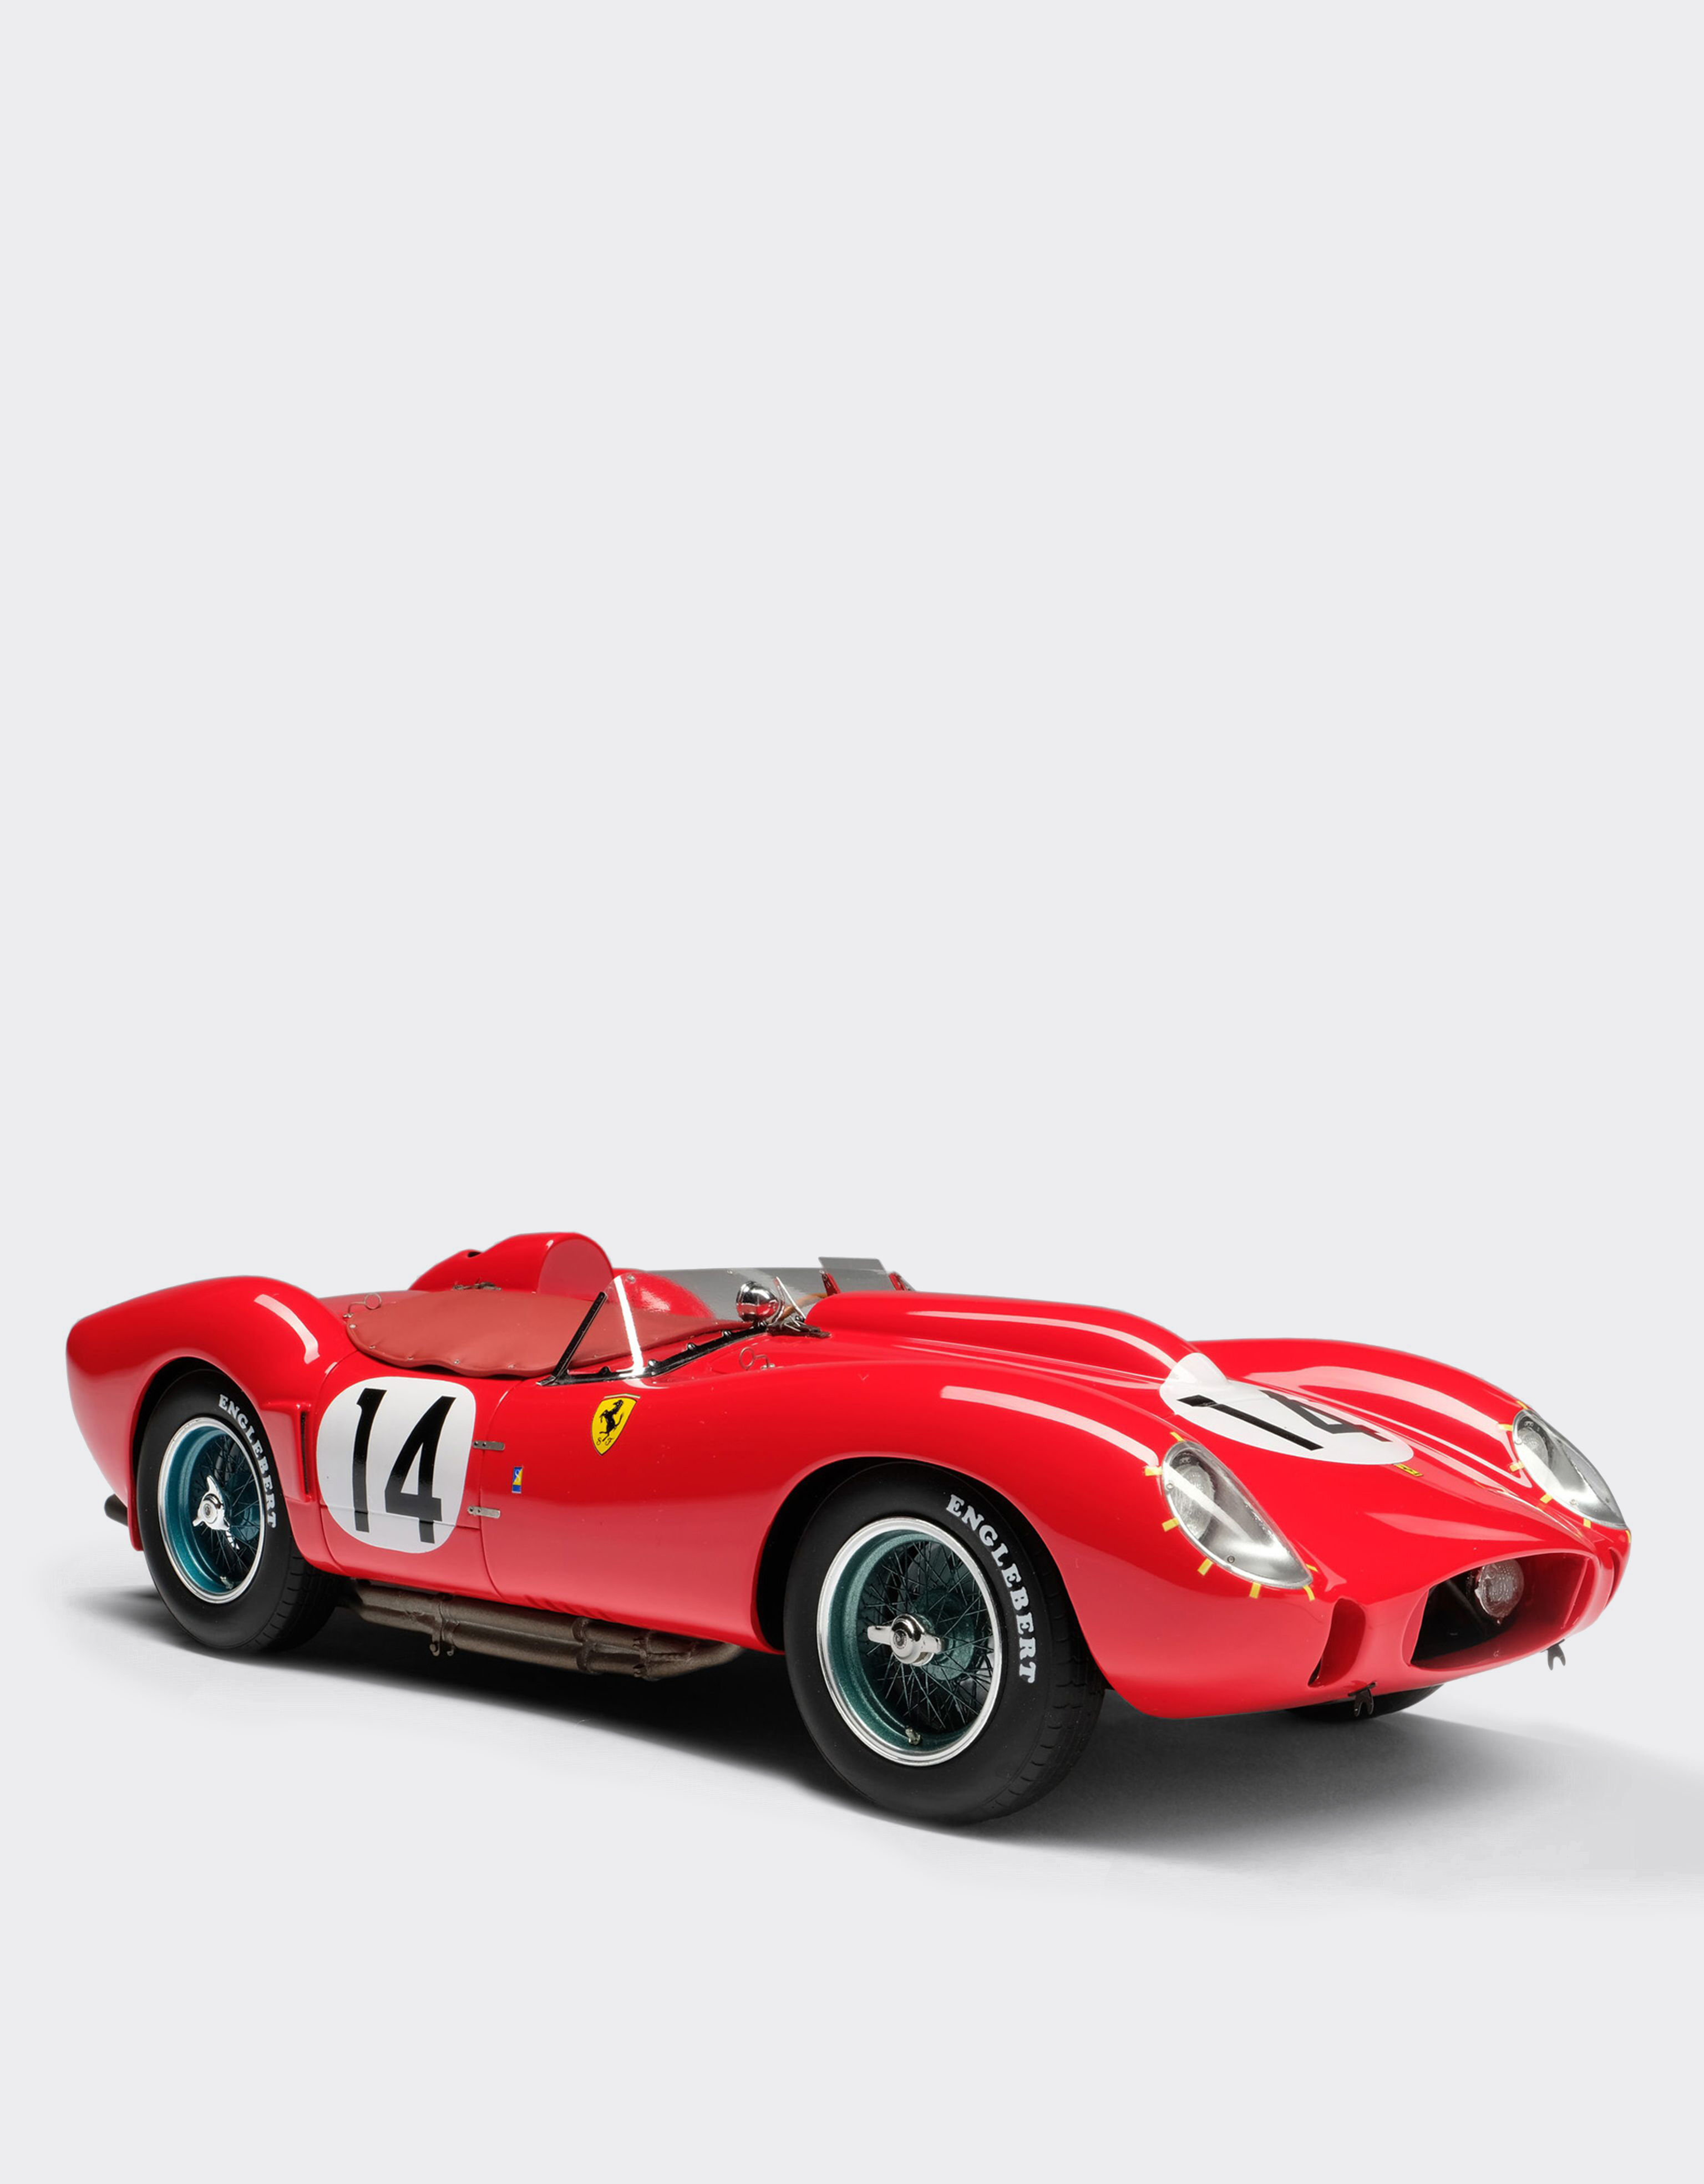 ${brand} Ferrari 250 TR 1958 Le Mans 1:18スケール モデルカー ${colorDescription} ${masterID}